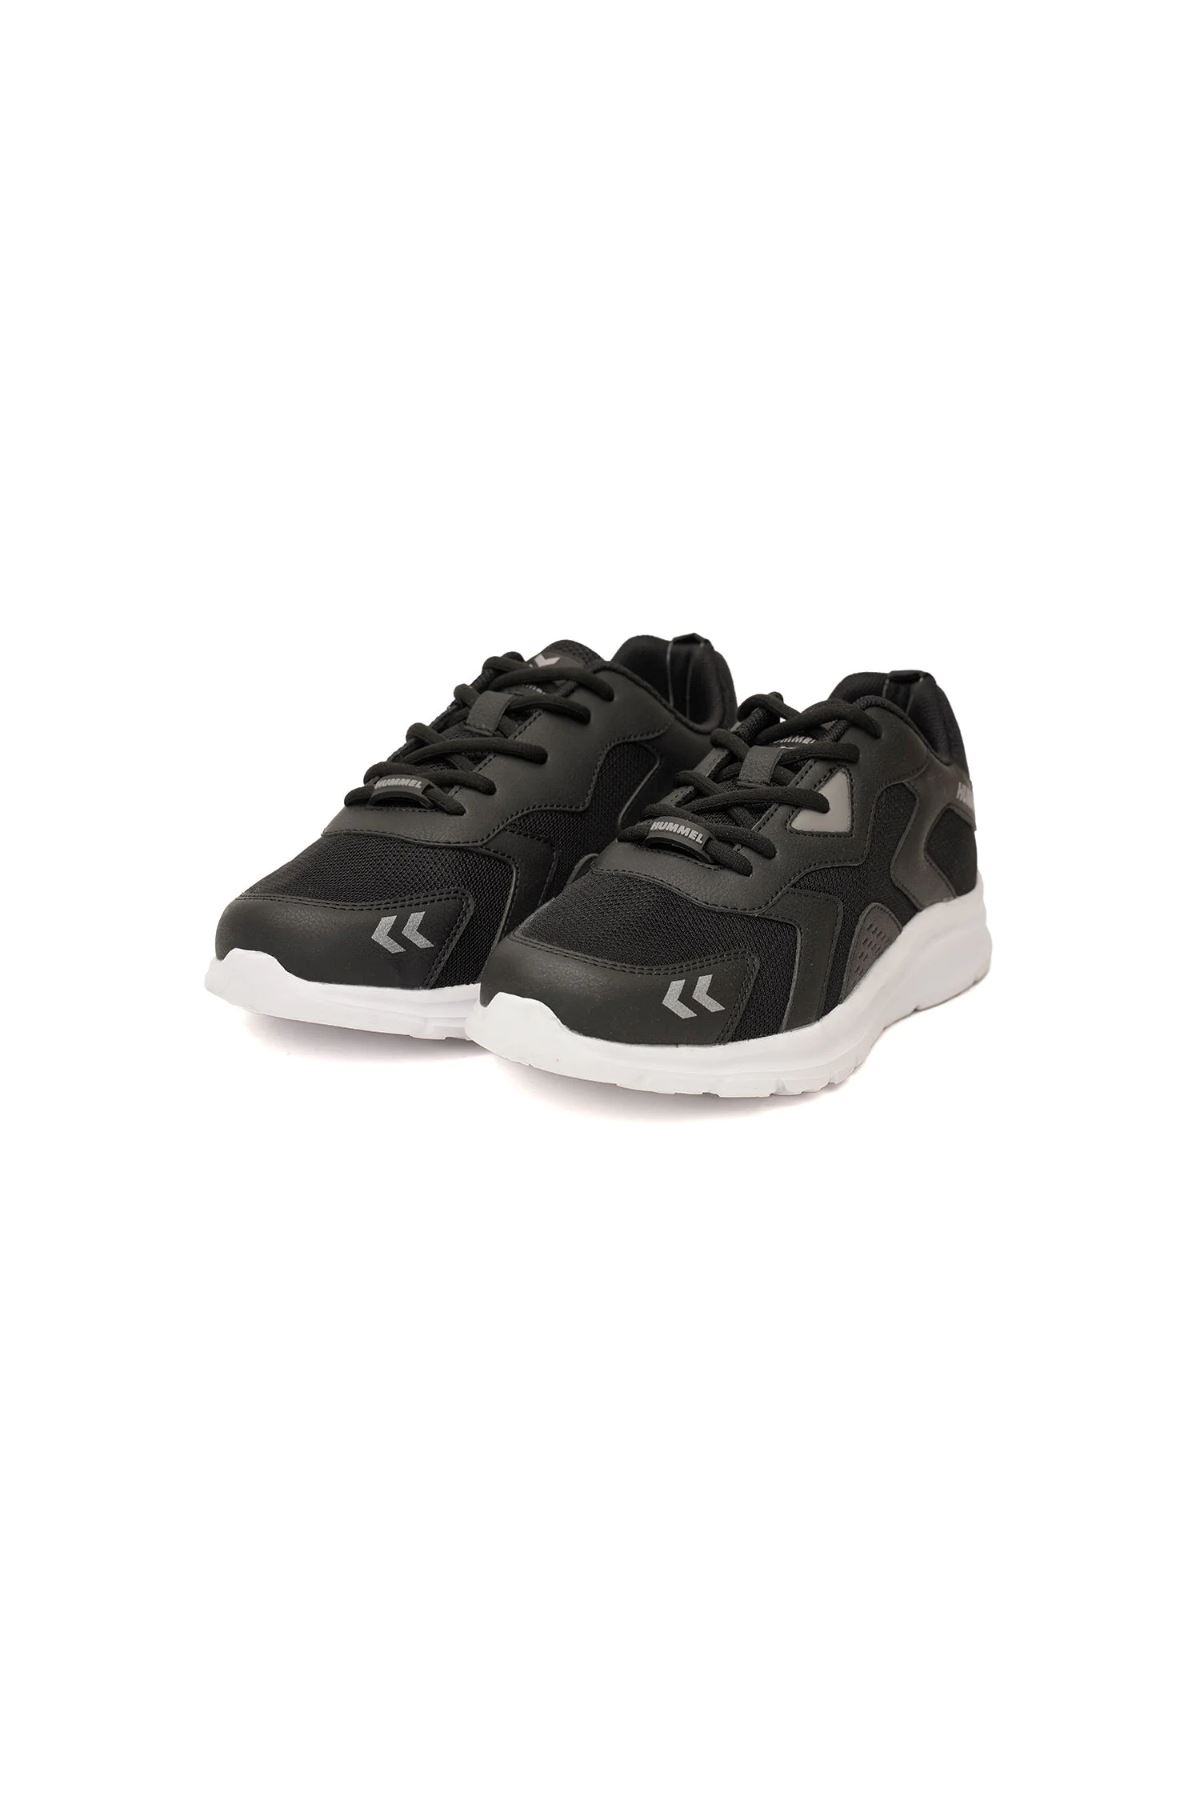 Hummel Hml Carıo Kadın Siyah Spor Ayakkabı - 900465-2001